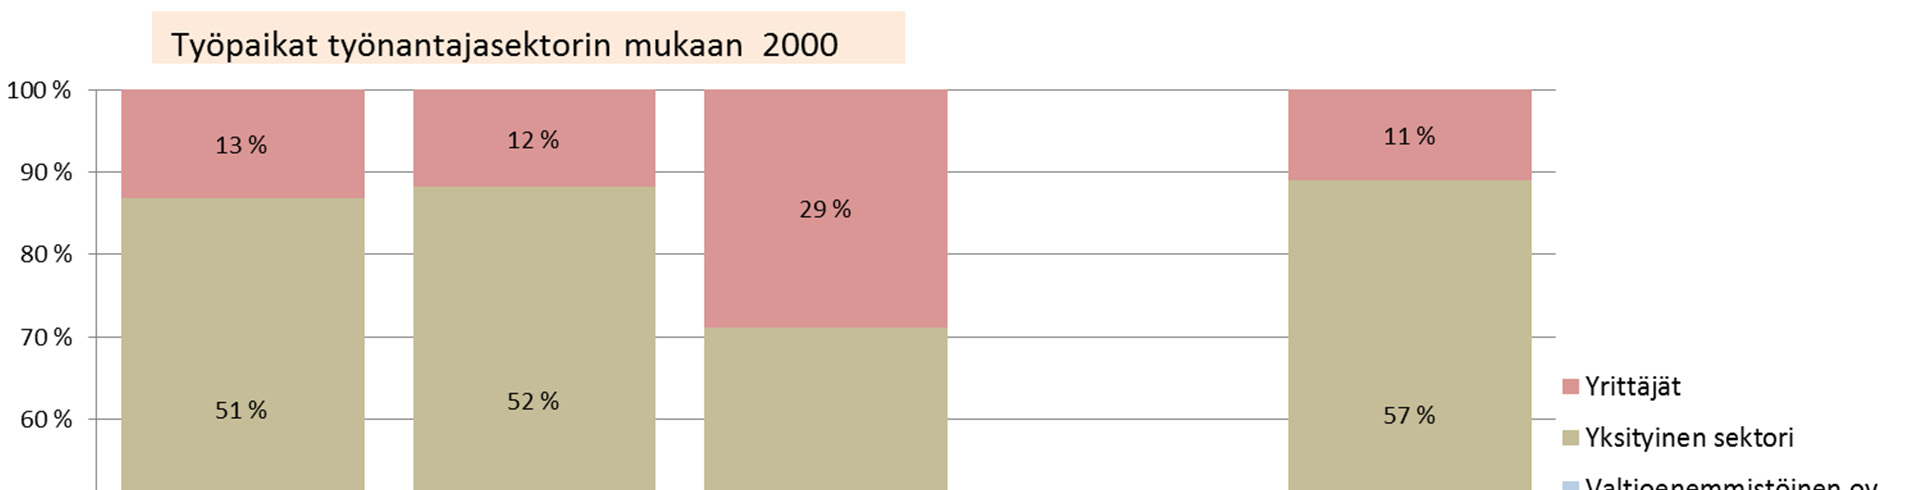 Työpaikat 2000 Vuonna 2000 alueen kuntien työpaikoista 26 % oli julkisella sektorilla (ilman valtionenemmistöisiä yhtiöitä), mikä oli hieman vähemmän kuin